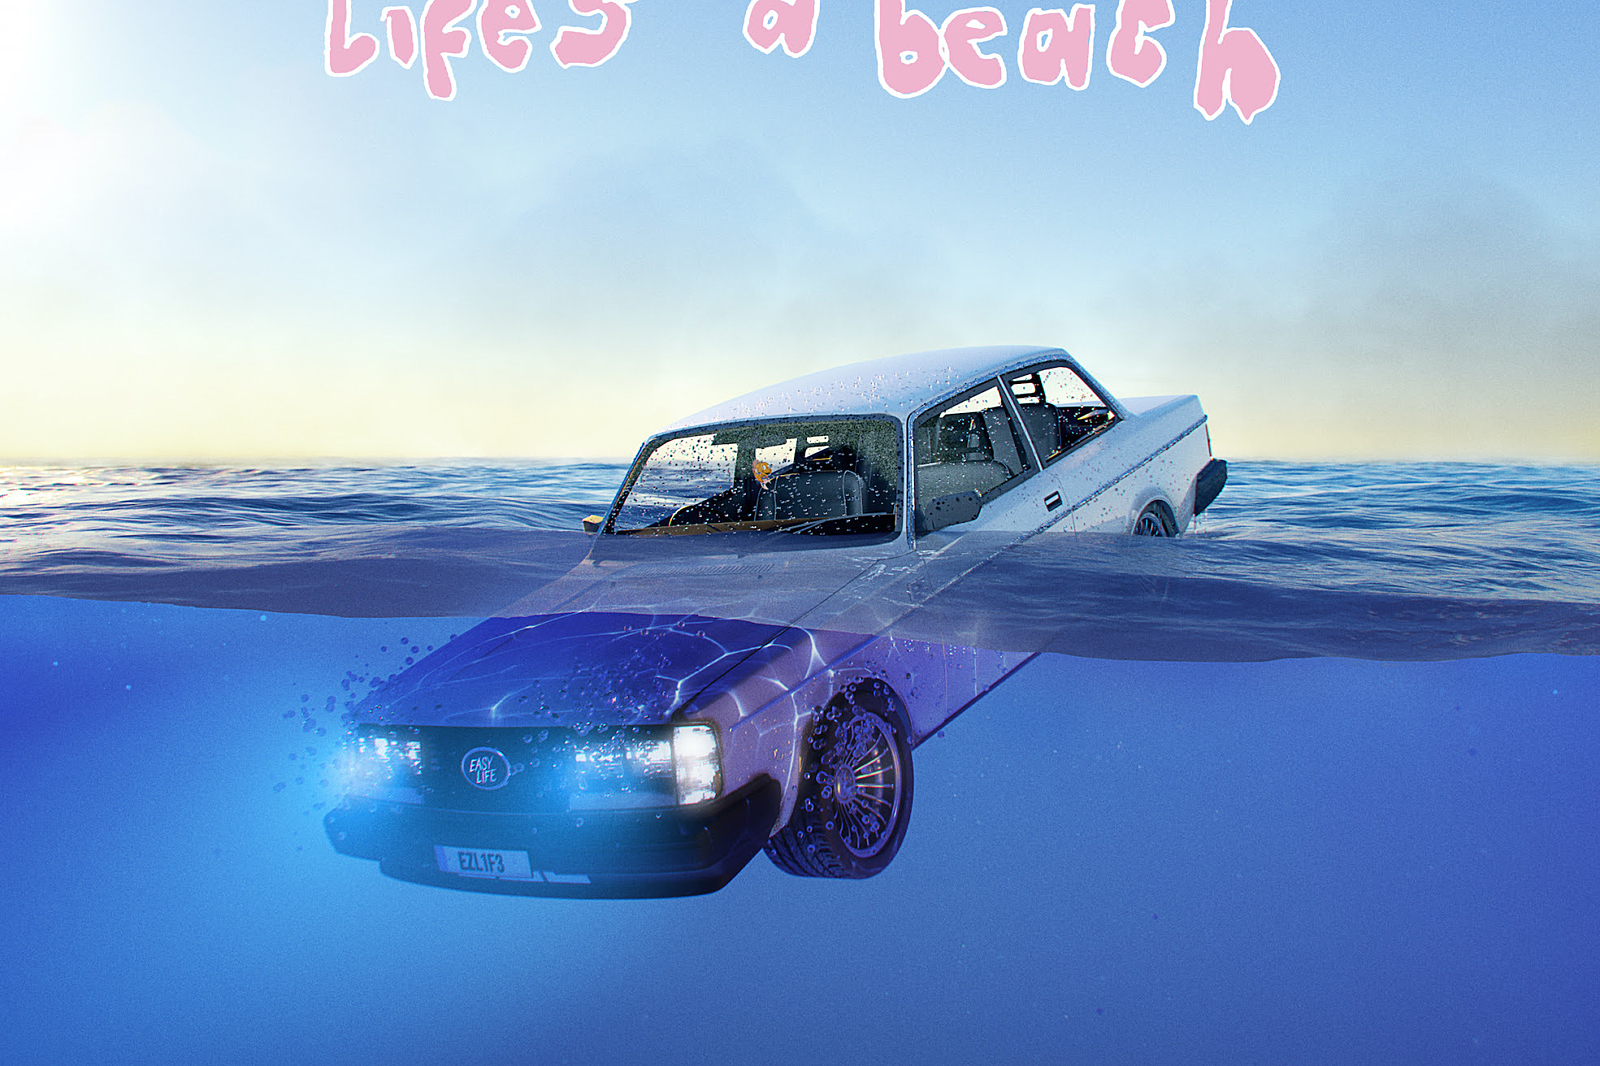 Easy Life - life's a beach